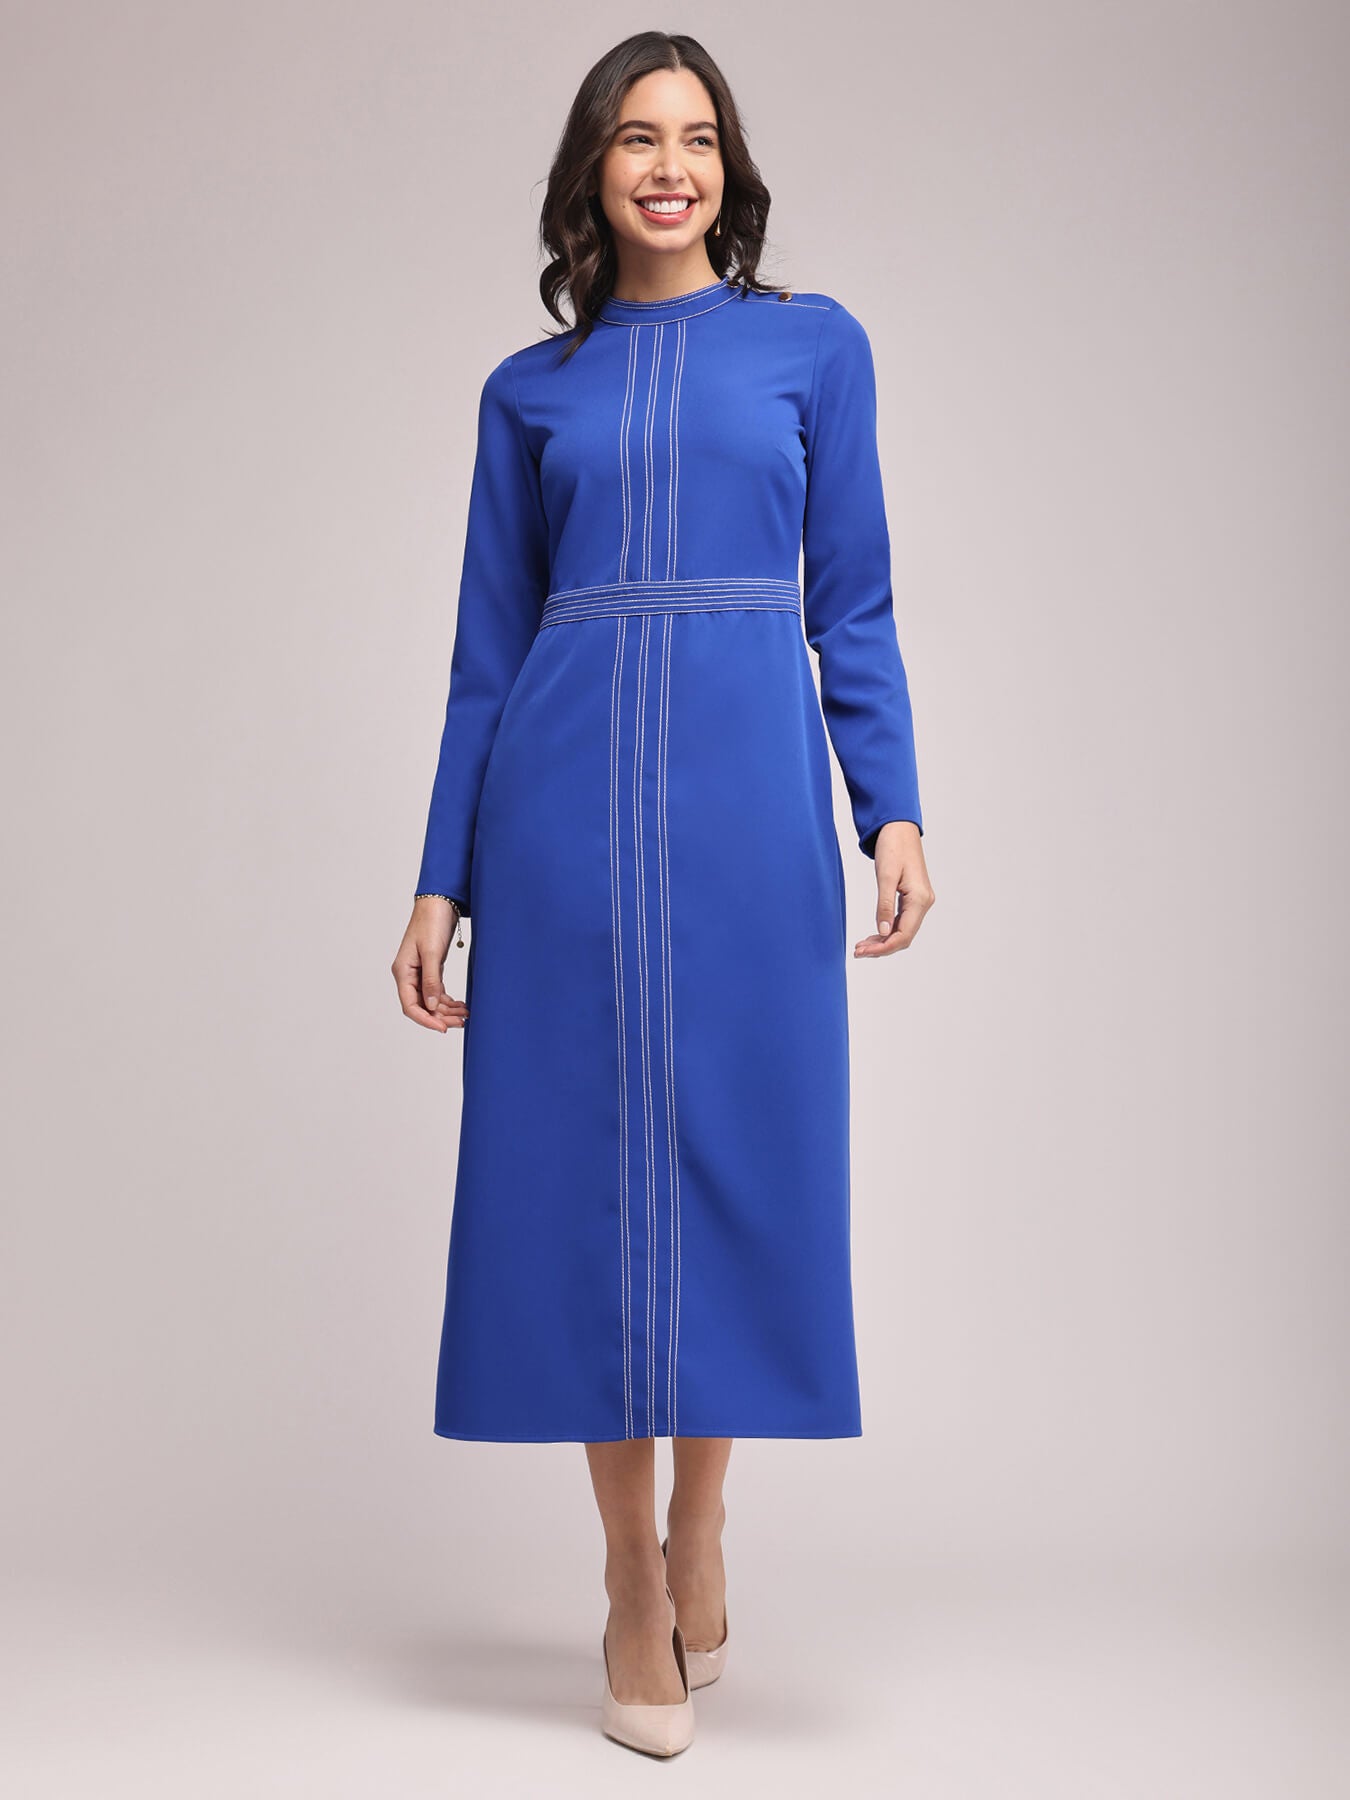 Round Neck Contrast Stitch Dress - Royal Blue